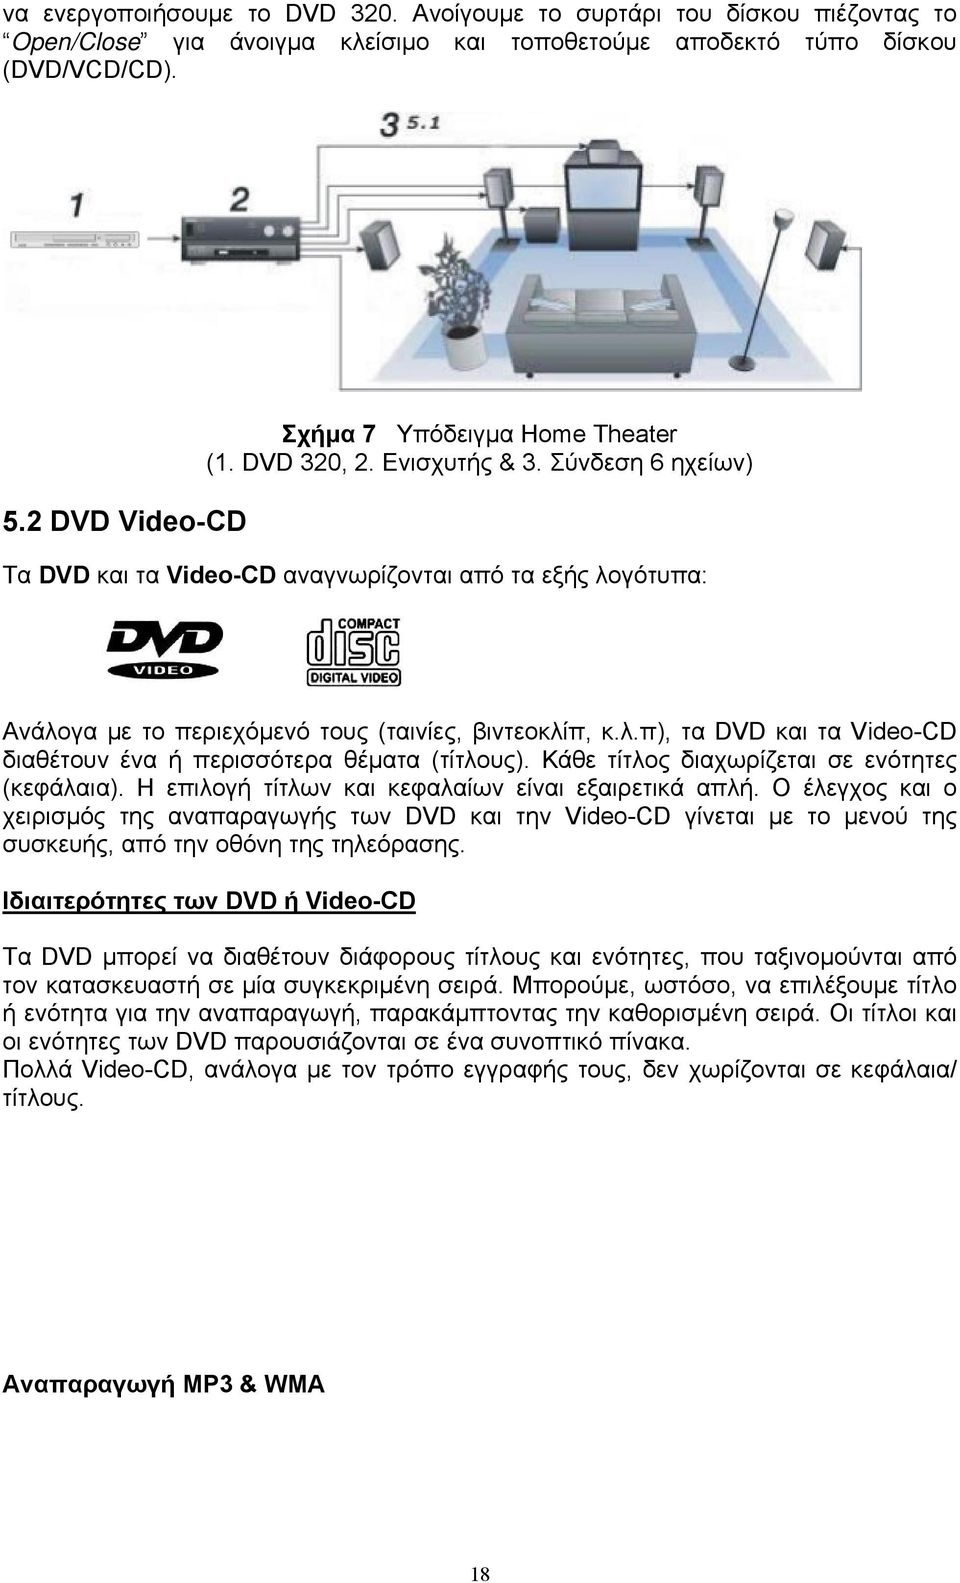 Σύνδεση 6 ηχείων) Τα DVD και τα Video-CD αναγνωρίζονται από τα εξής λογότυπα: Ανάλογα με το περιεχόμενό τους (ταινίες, βιντεοκλίπ, κ.λ.π), τα DVD και τα Video-CD διαθέτουν ένα ή περισσότερα θέματα (τίτλους).